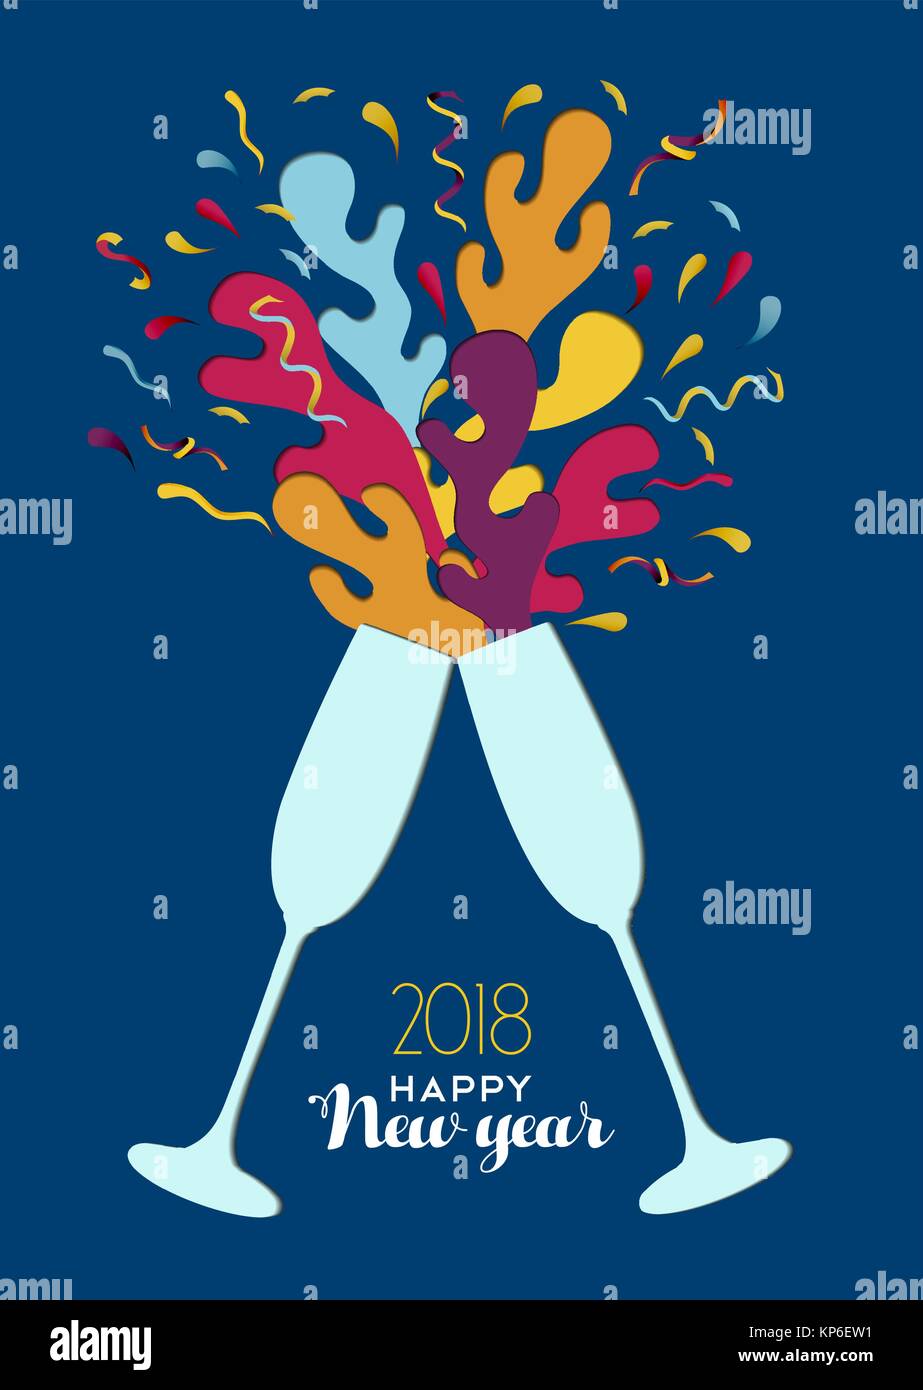 Frohes Neues Jahr 2018 Abbildung: party Toast mit bunten Konfetti Explosion. Ideal für Urlaub Grußkarte oder Party Einladung. EPS 10 Vektor. Stock Vektor